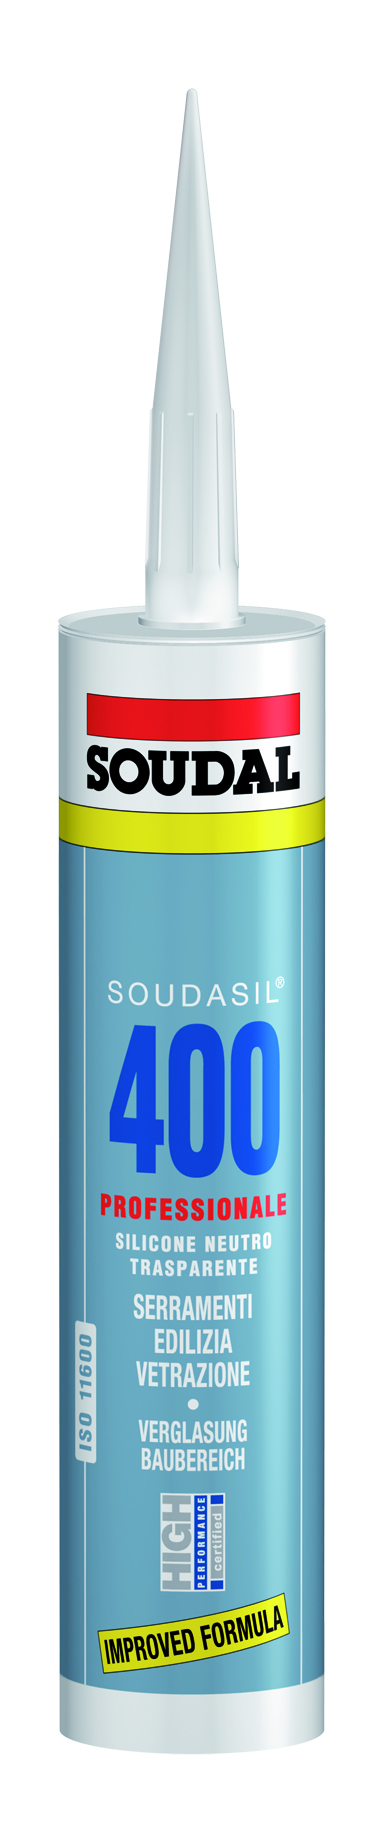 SOUDAL -  Sigillante SOUDASIL 400 silicone neutro per sigillatura di vetri - col. GRIGIO METAL - q.ta 310 ML